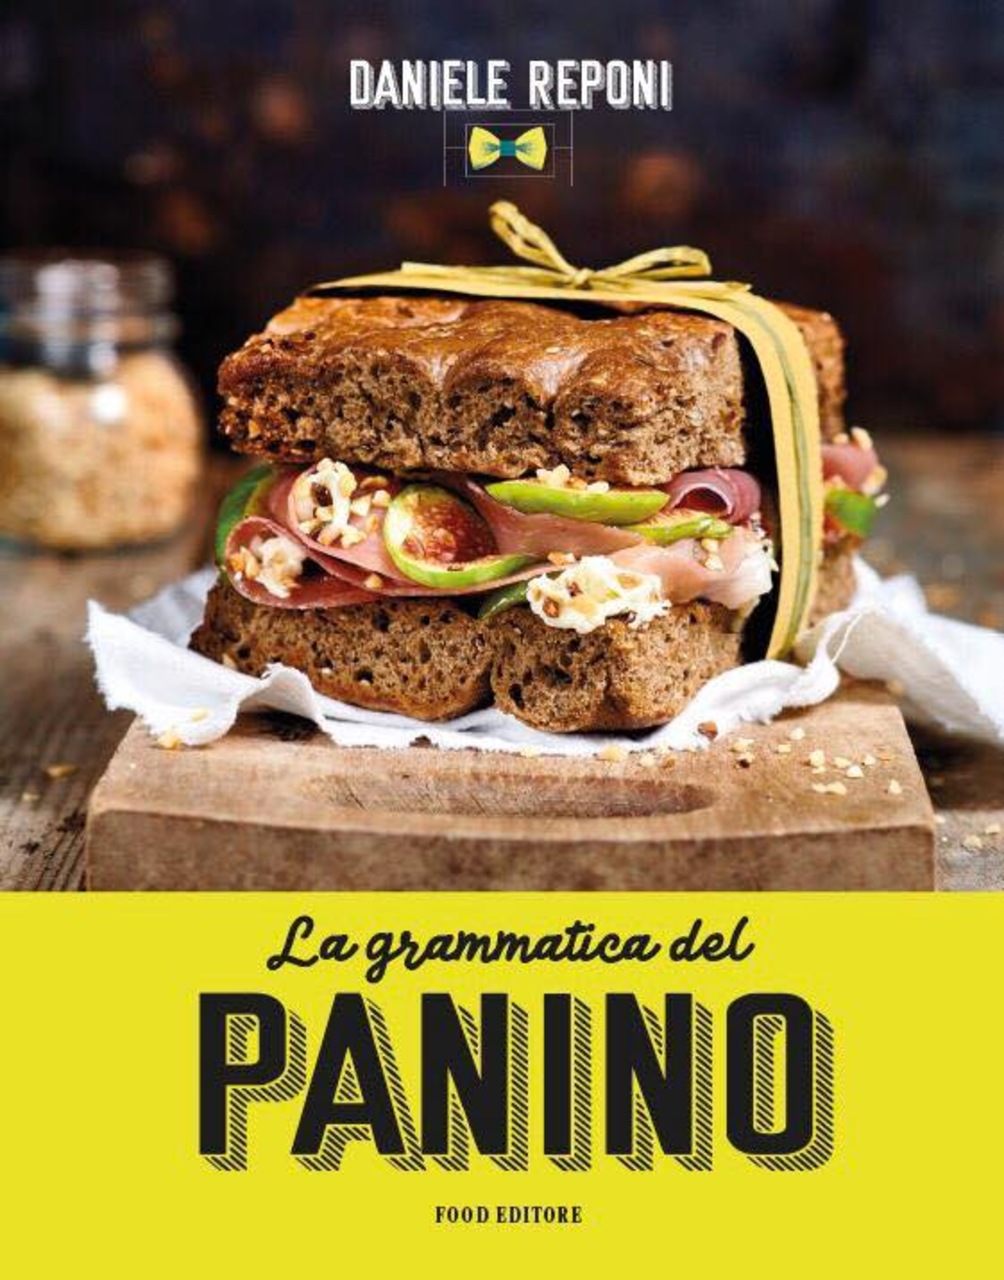 Kanapka dla smakoszy: okładka książki „Gramatyka kanapki” Daniele Reponi